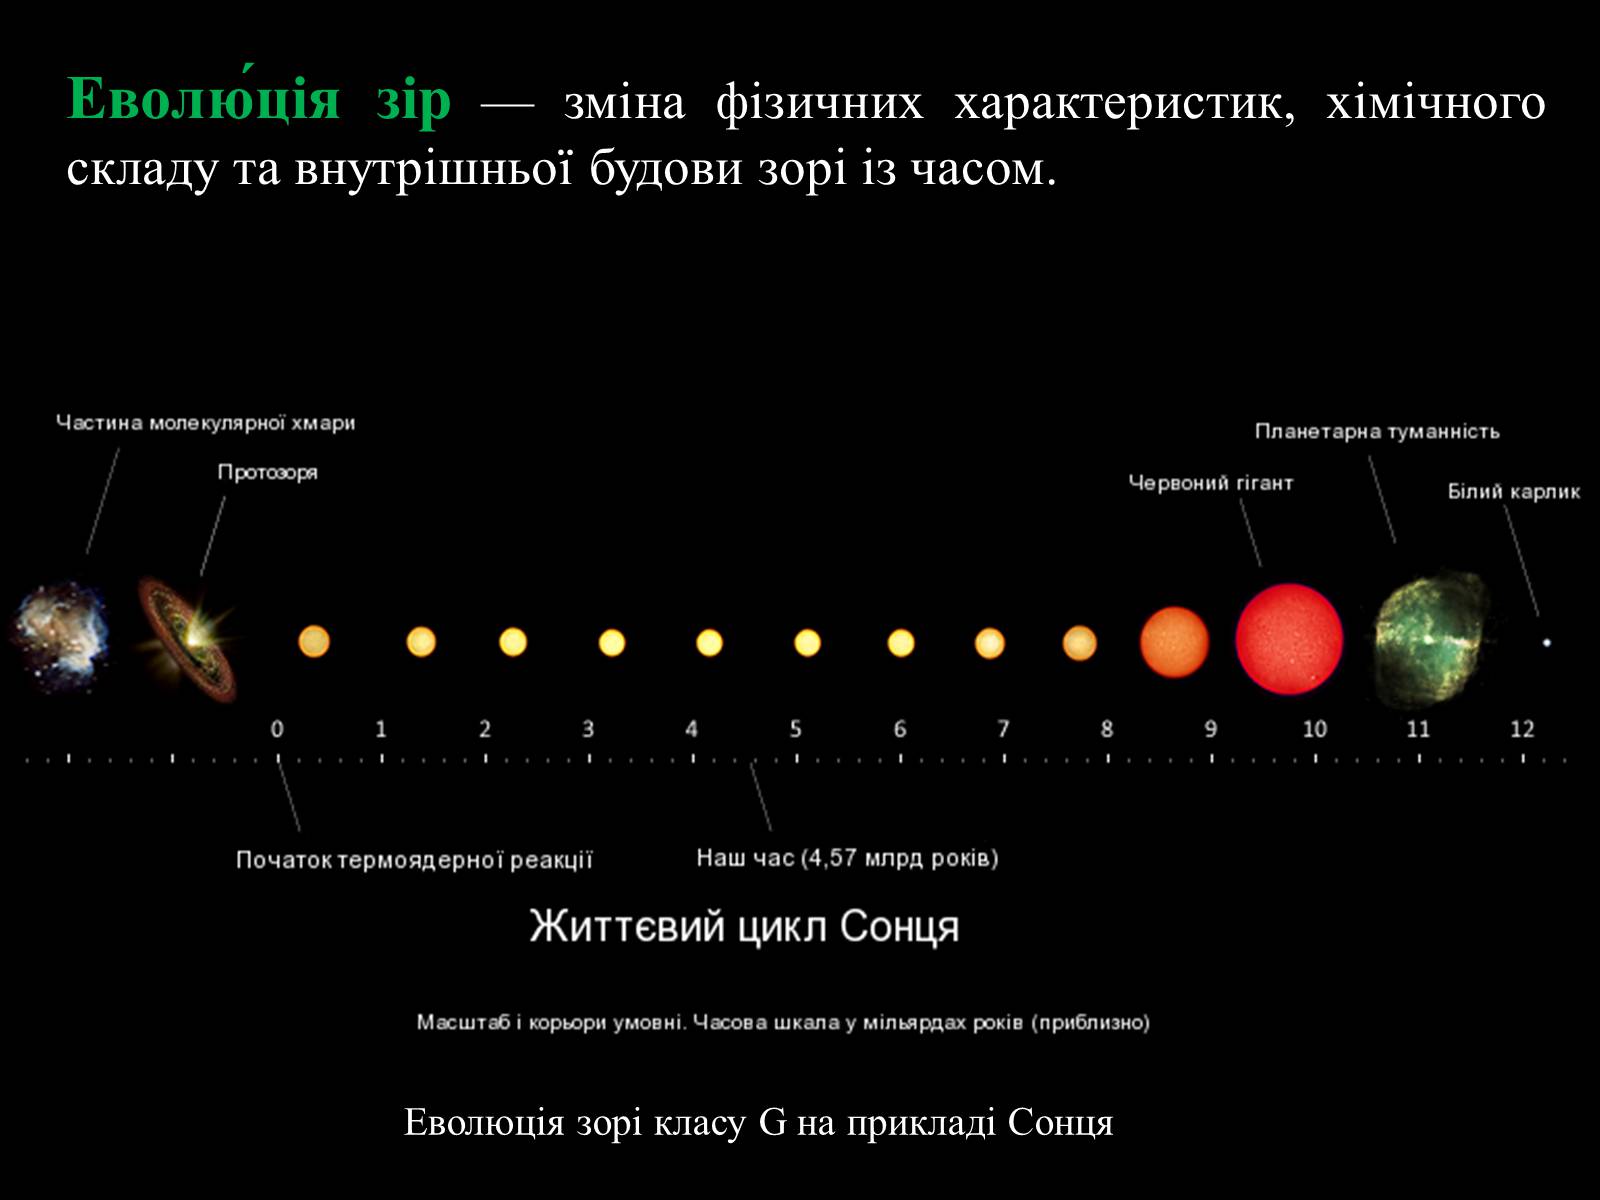 Жизненный цикл звезды спектрального